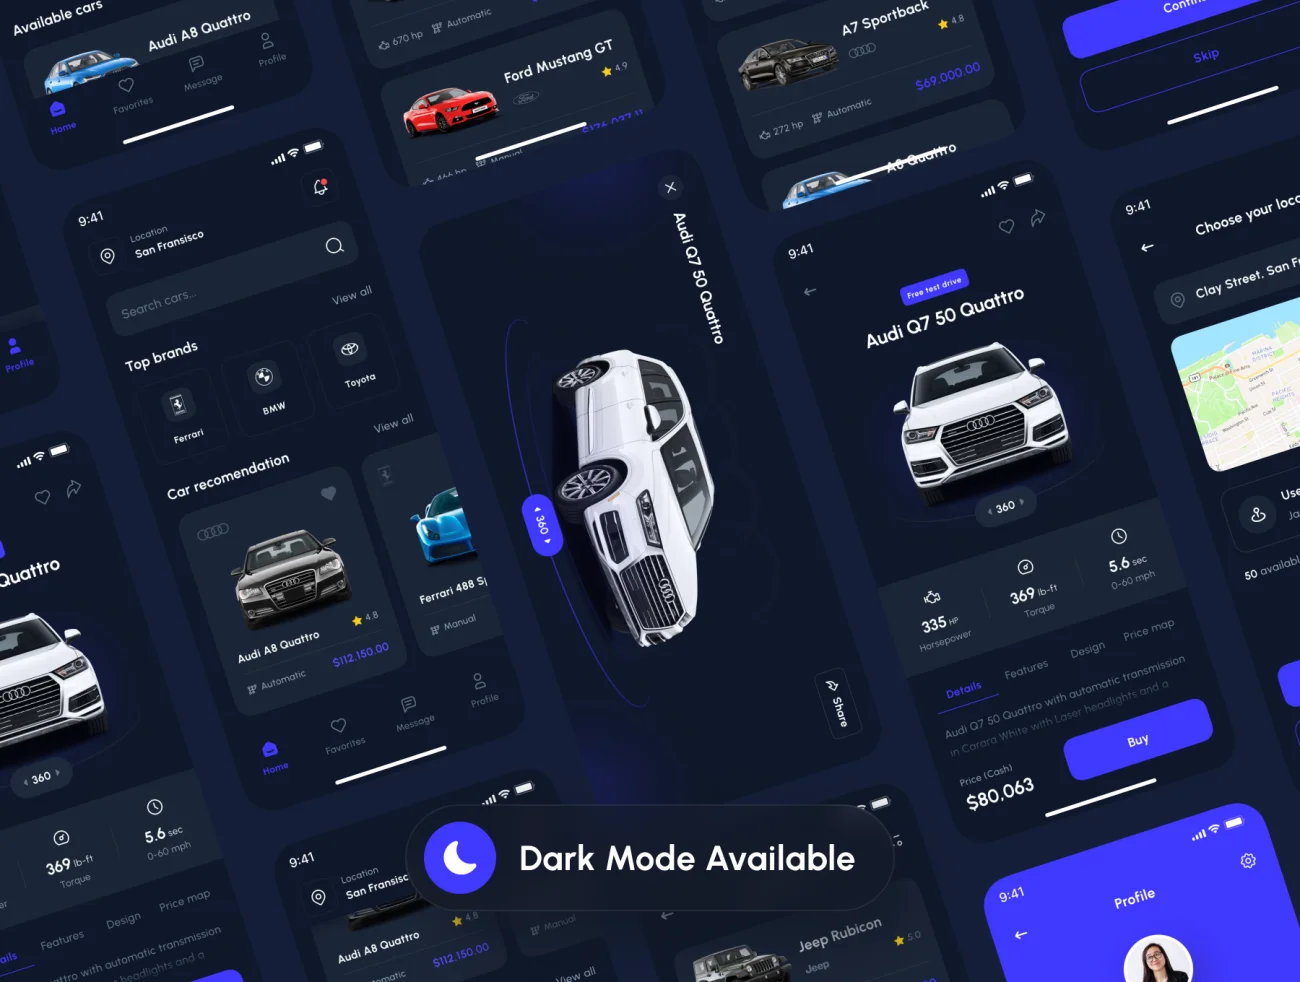 75屏汽车销售网购应用UI设计套件 Carline - Car Marketplace App UI Kit .figma-UI/UX、ui套件、主页、网站、网购、聊天、详情-到位啦UI